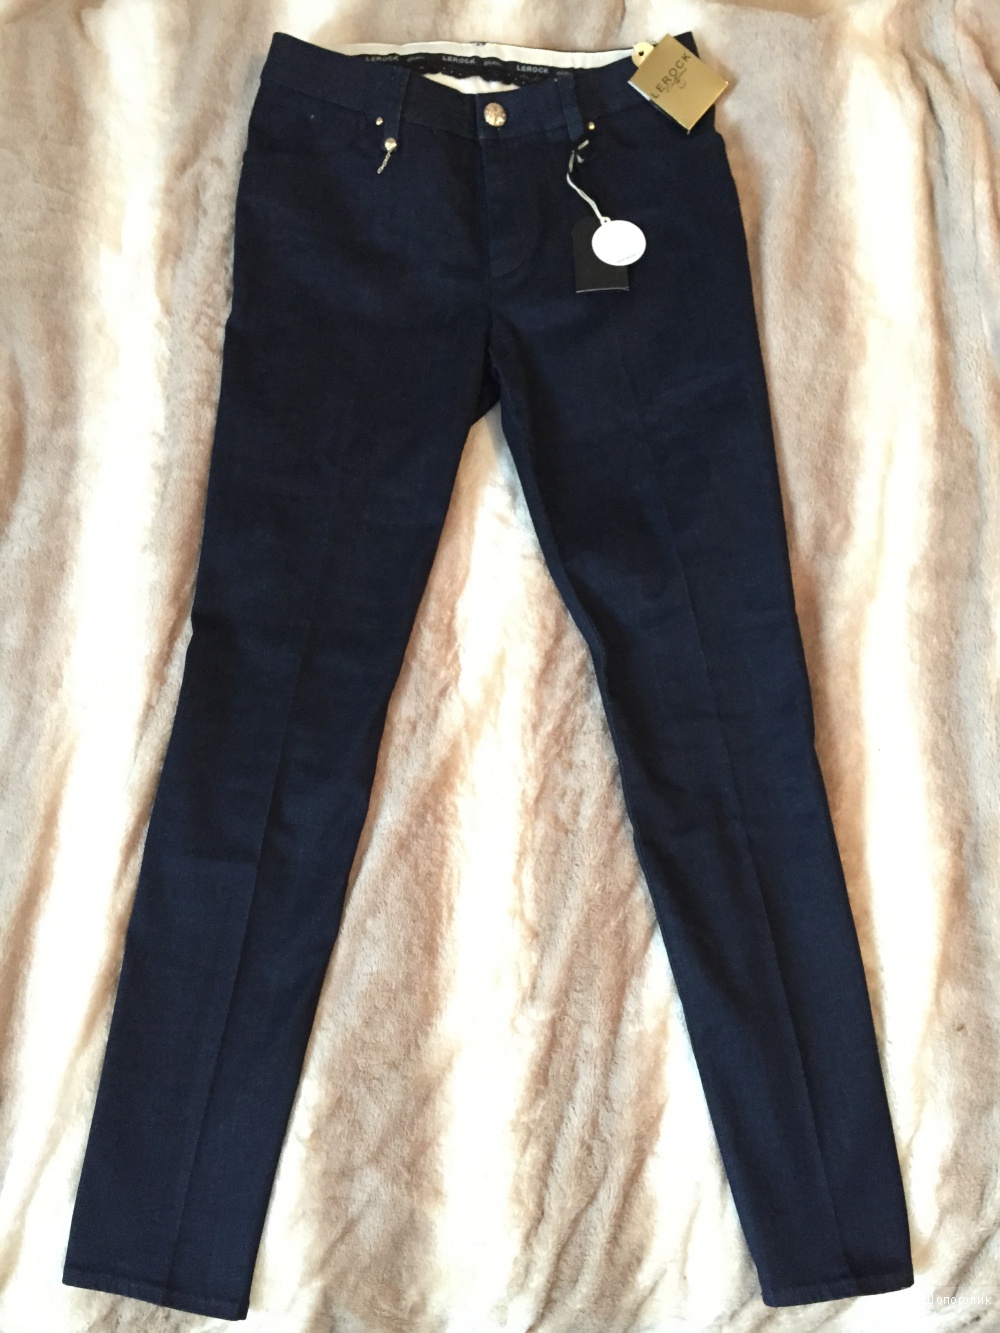 LEROCK, джинсовые штаны, размер 29